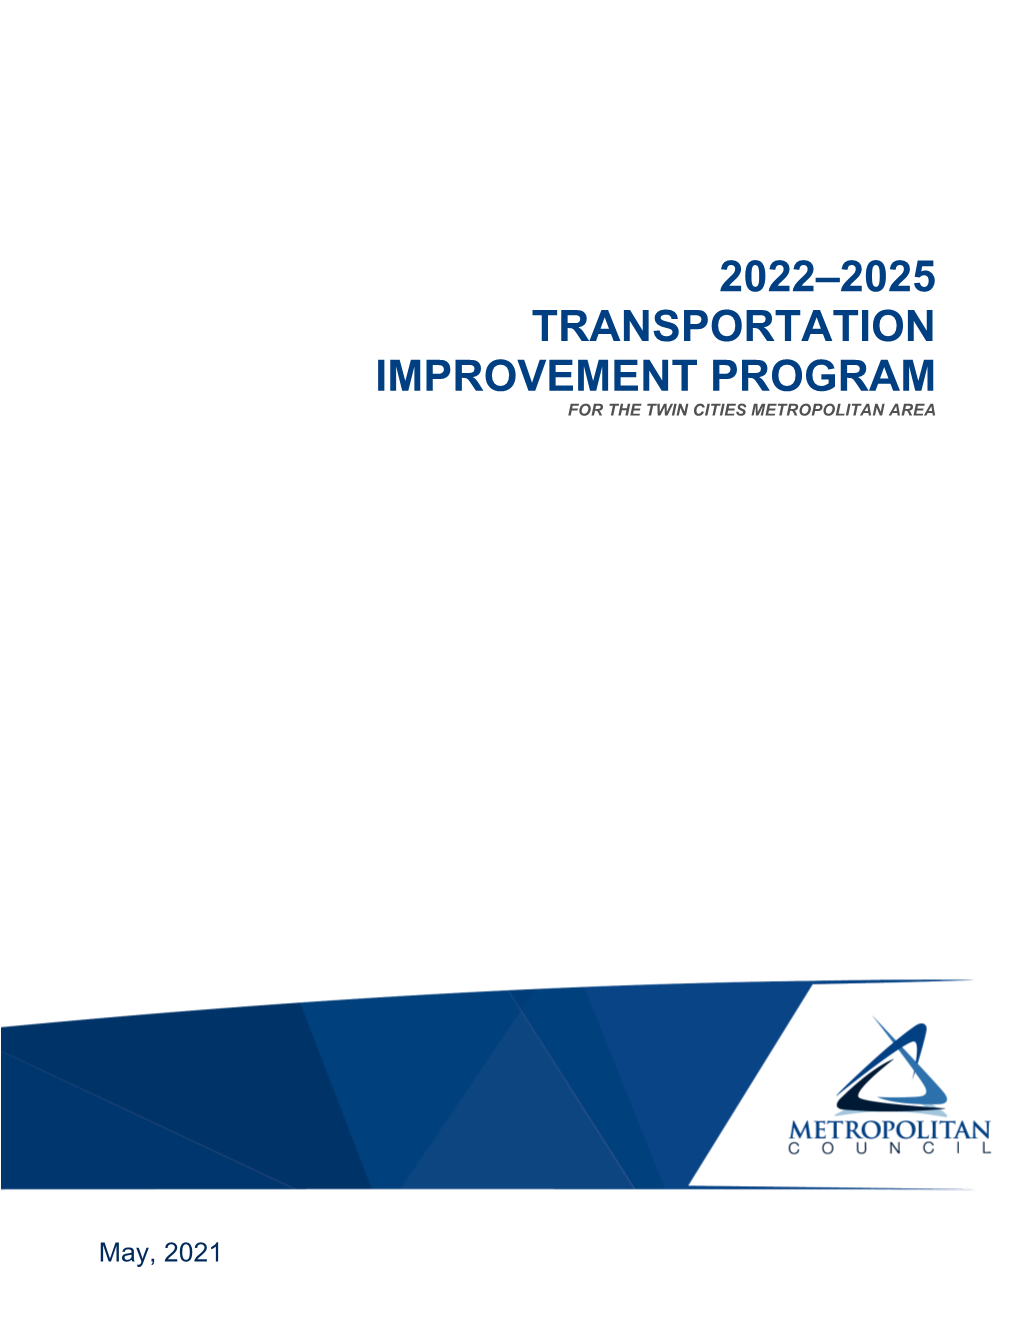 2022-2025 Transportation Improvement Program to the 1990 Clean Air Act Amendments APPENDIX C Streamlined TIP Amendment Process